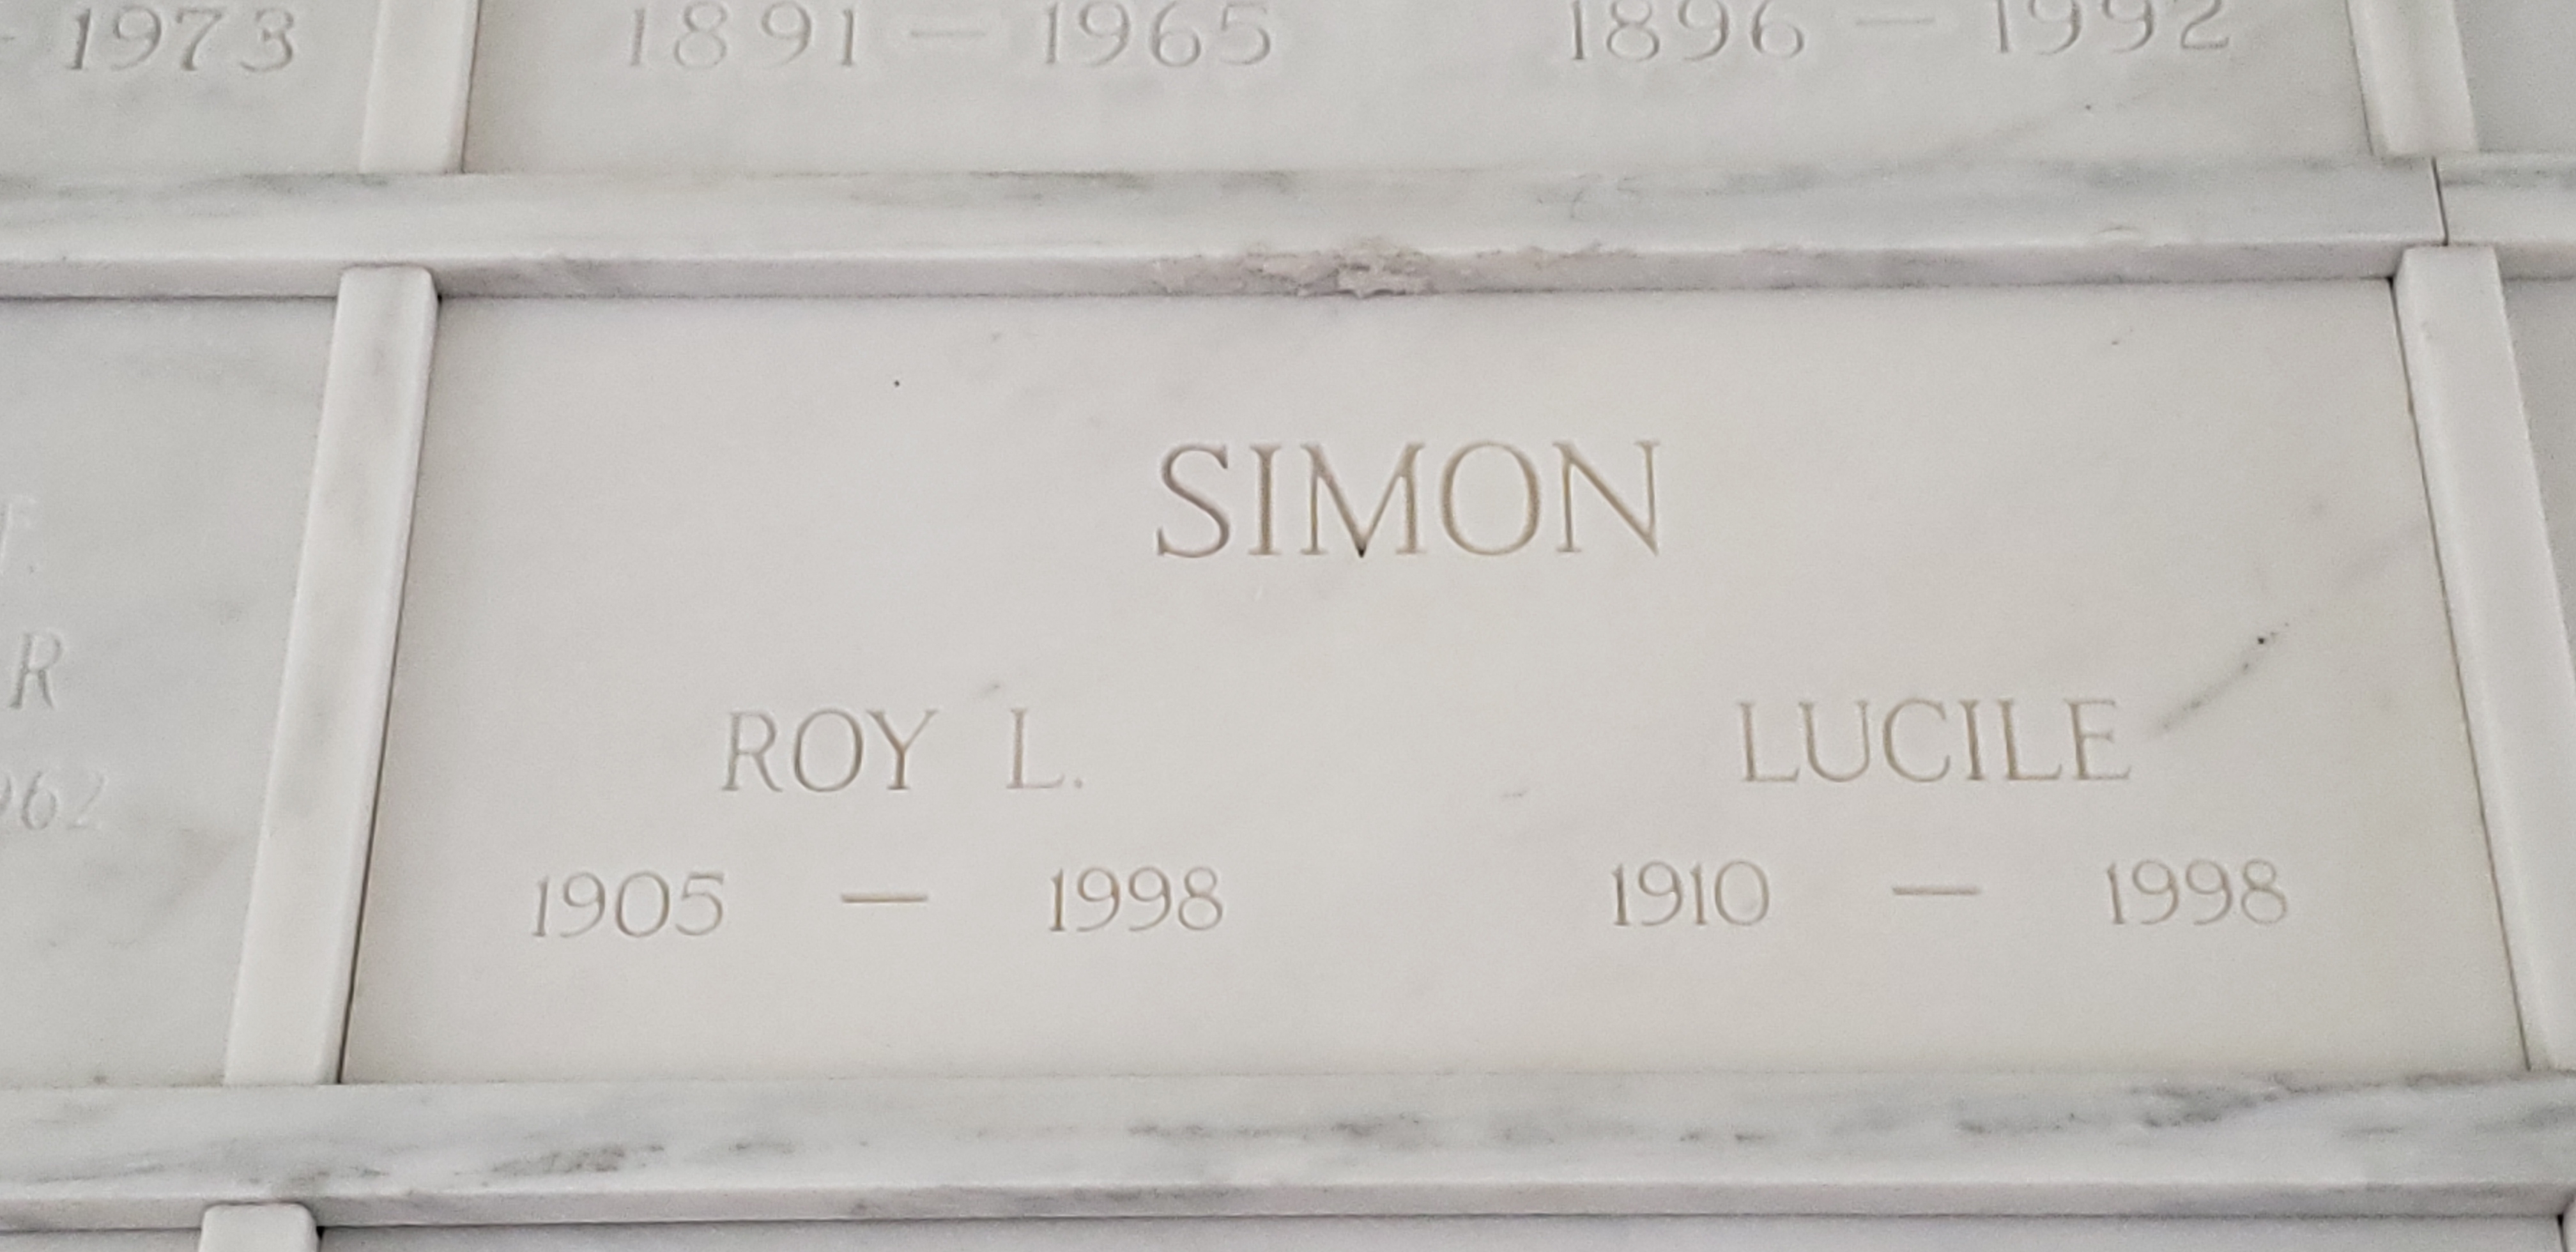 Roy L Simon